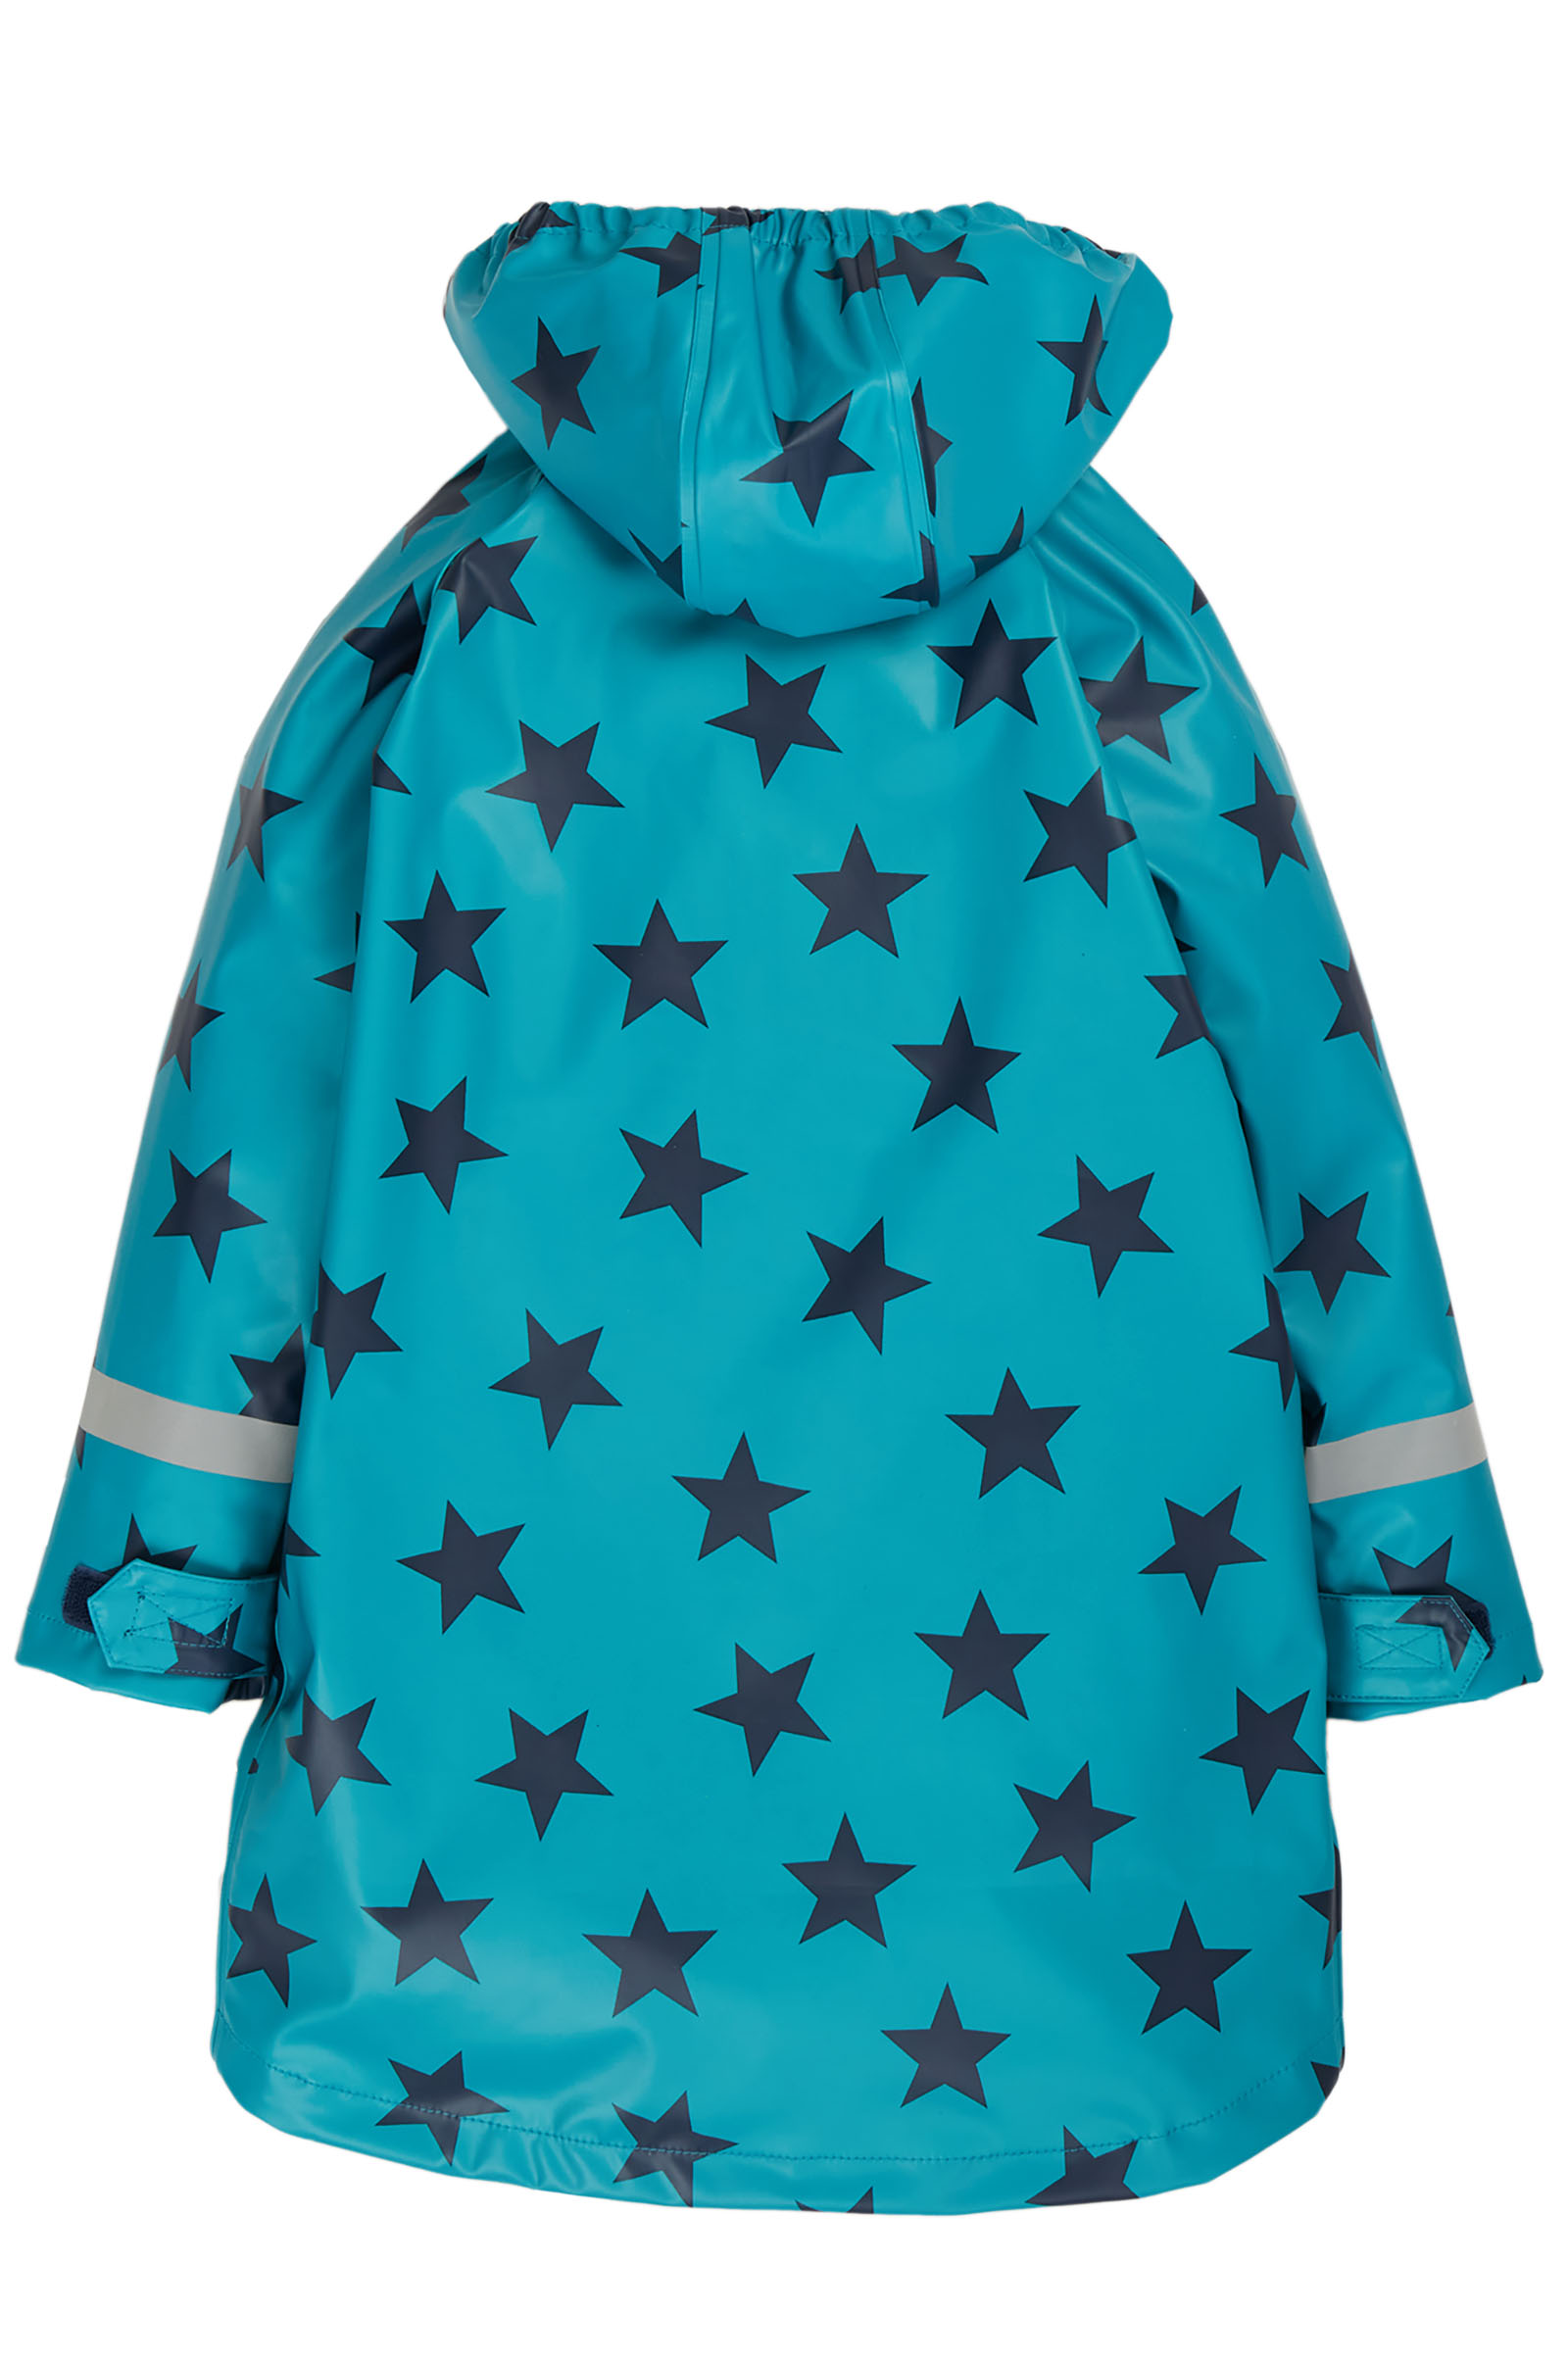 Blauer Kinder-Regenmantel Rainy Days mit Sternen